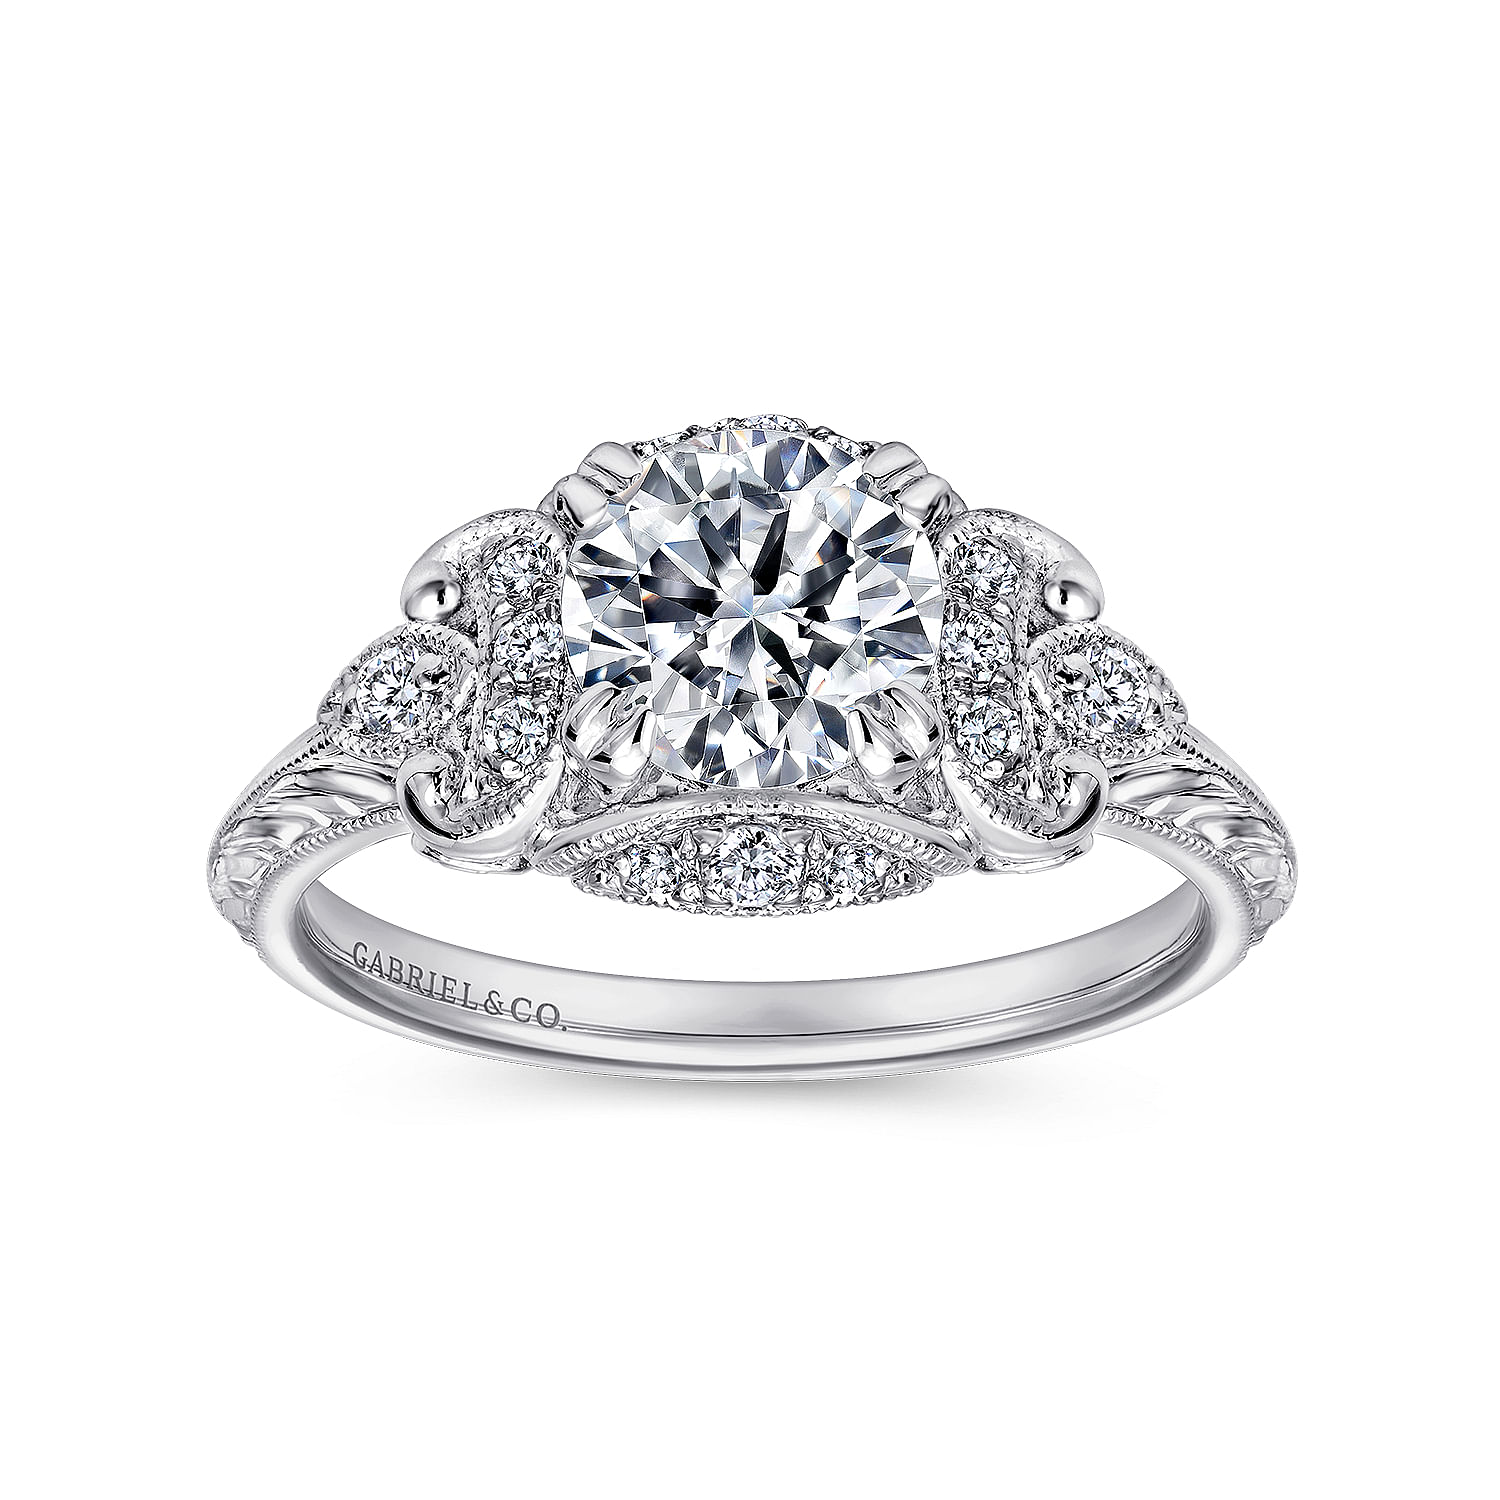 Unique Platinum Vintage Inspired Diamond Halo Engagement Ring